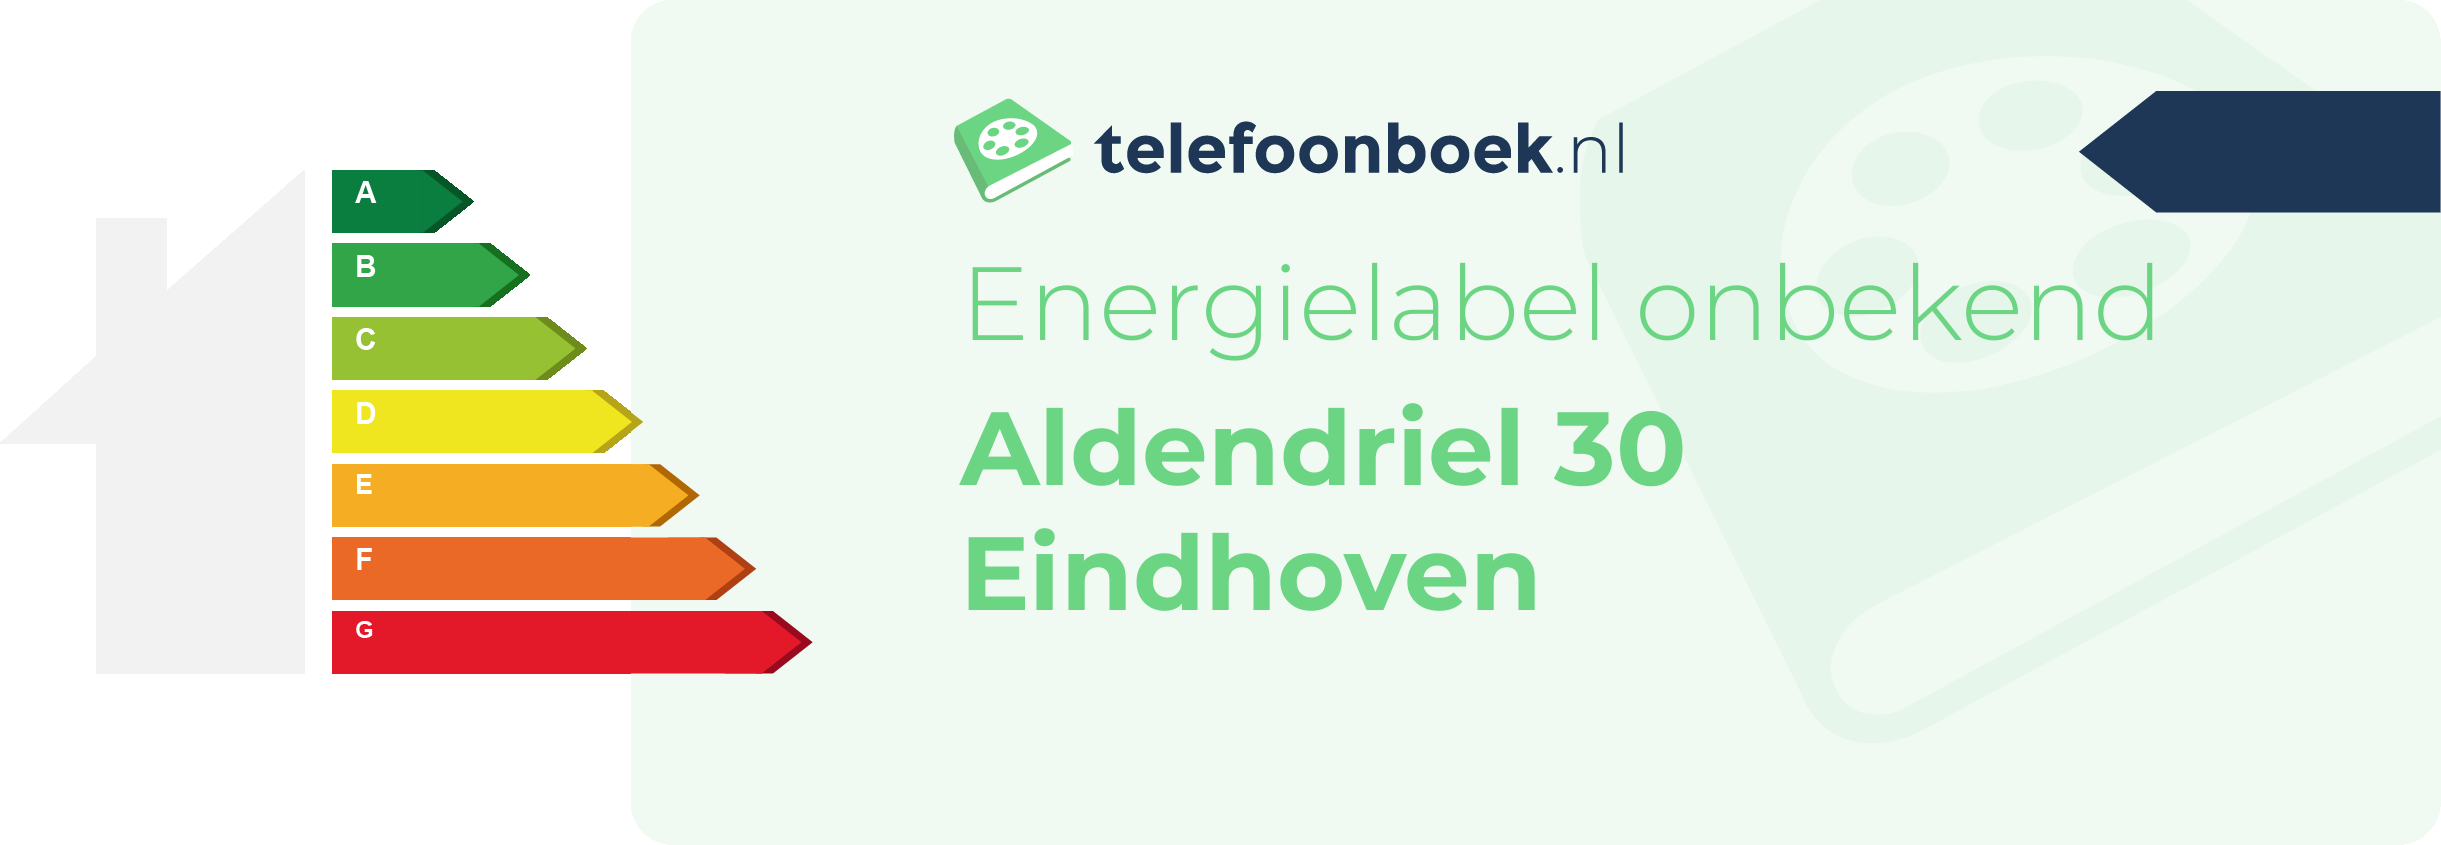 Energielabel Aldendriel 30 Eindhoven